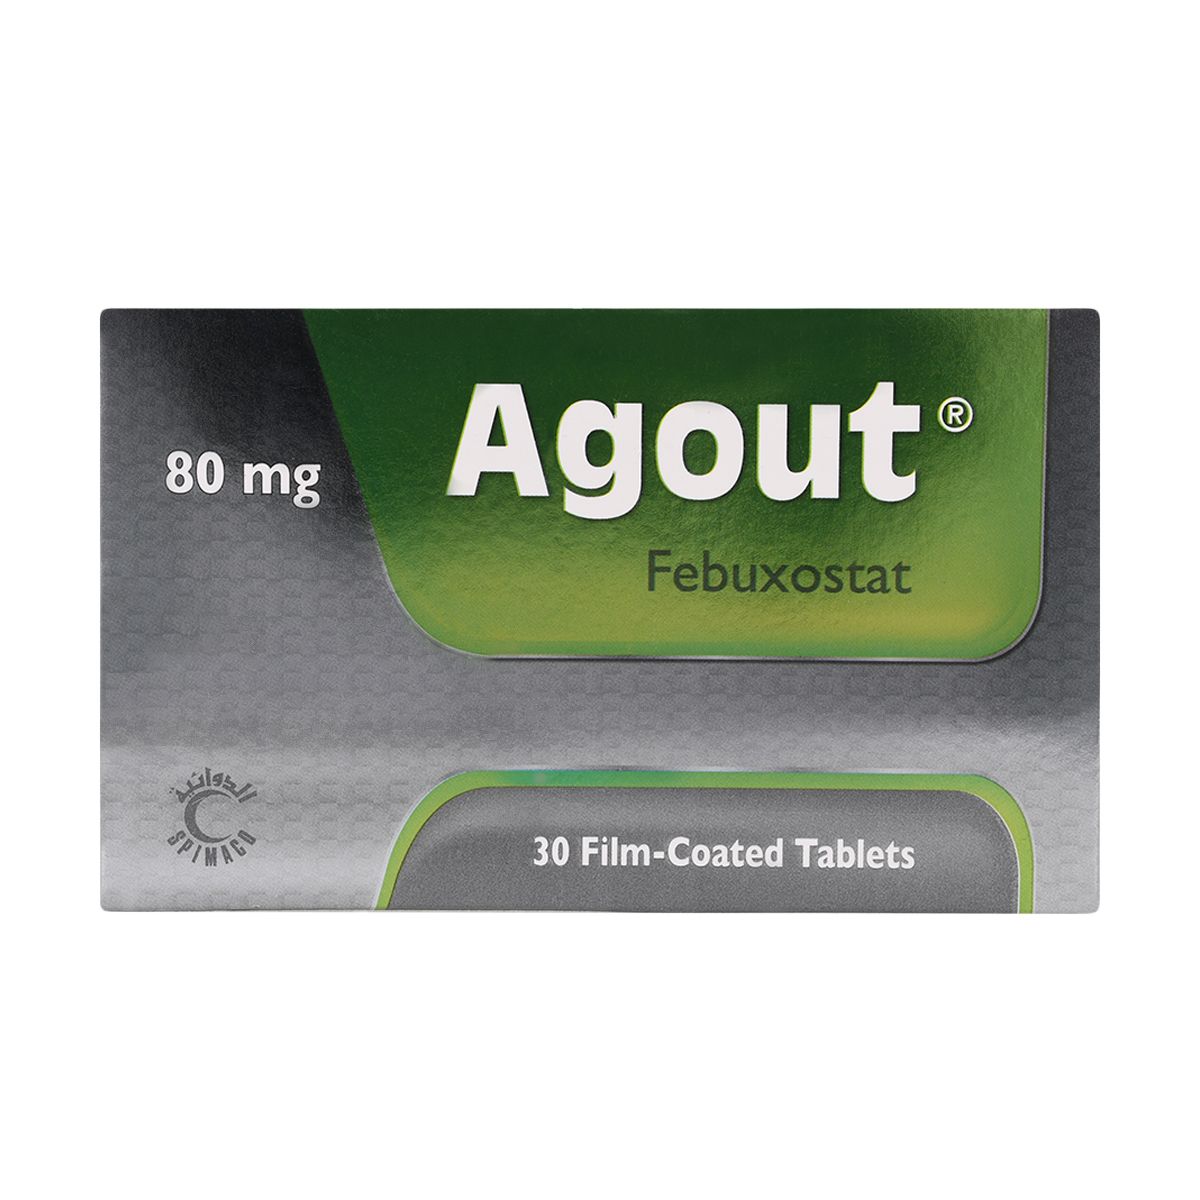 Agout 80 mg tab 30 tab